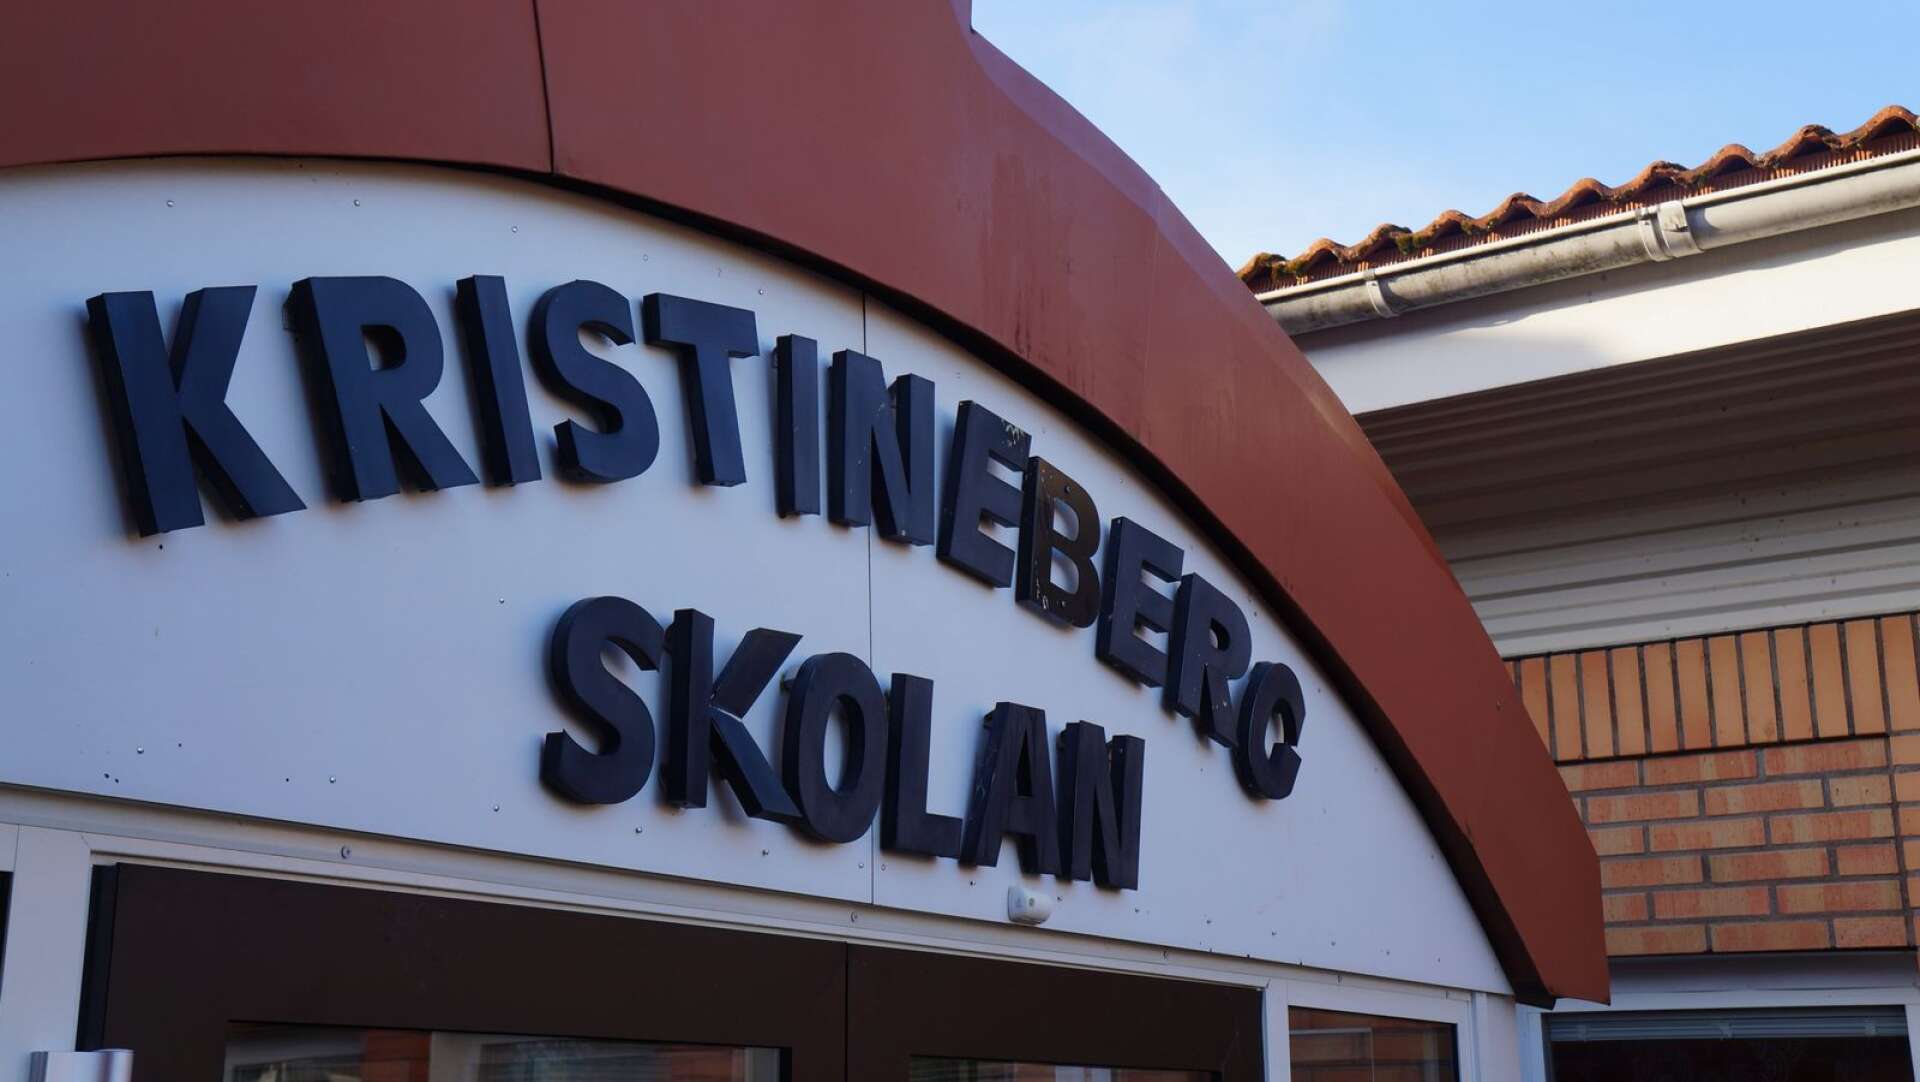 Om två år är det tänkt att renoveringen av Kristinebergskolan ska starta. 